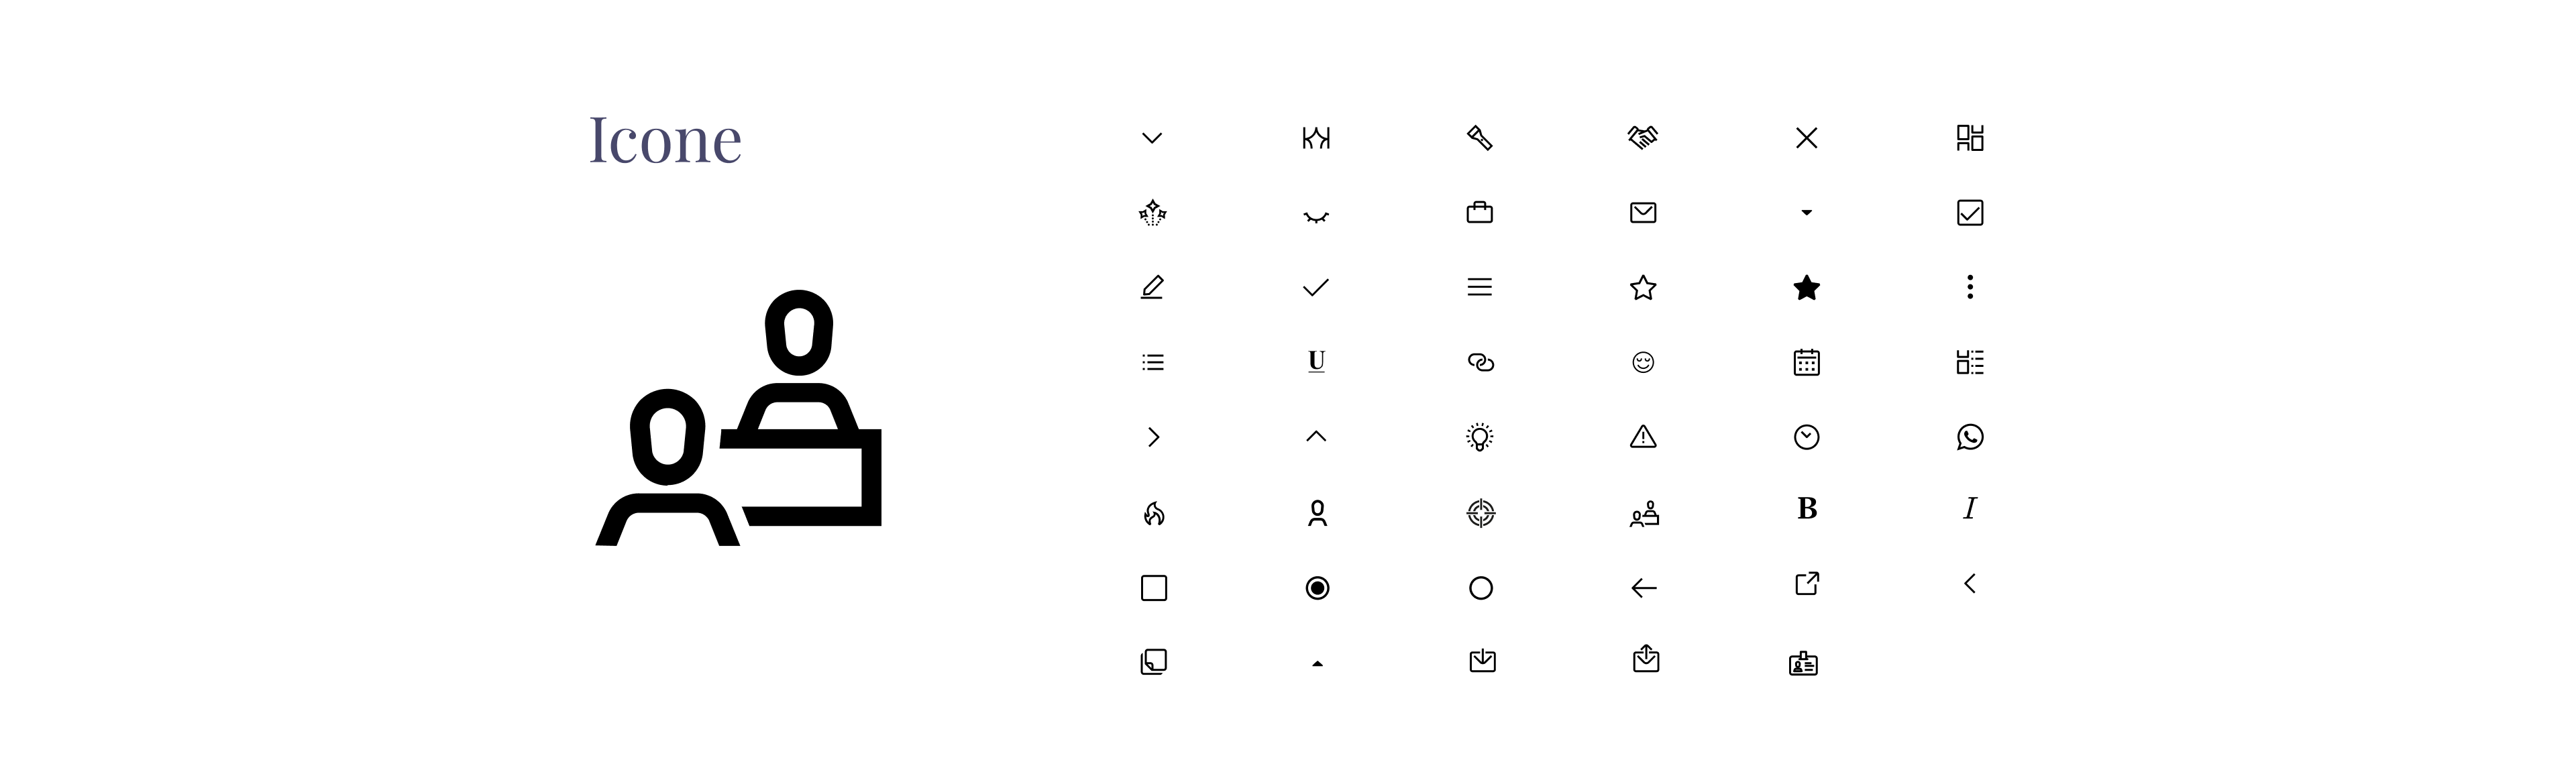 Alcune delle icone create, posizionate in griglia con una icona più grande a sinistra.